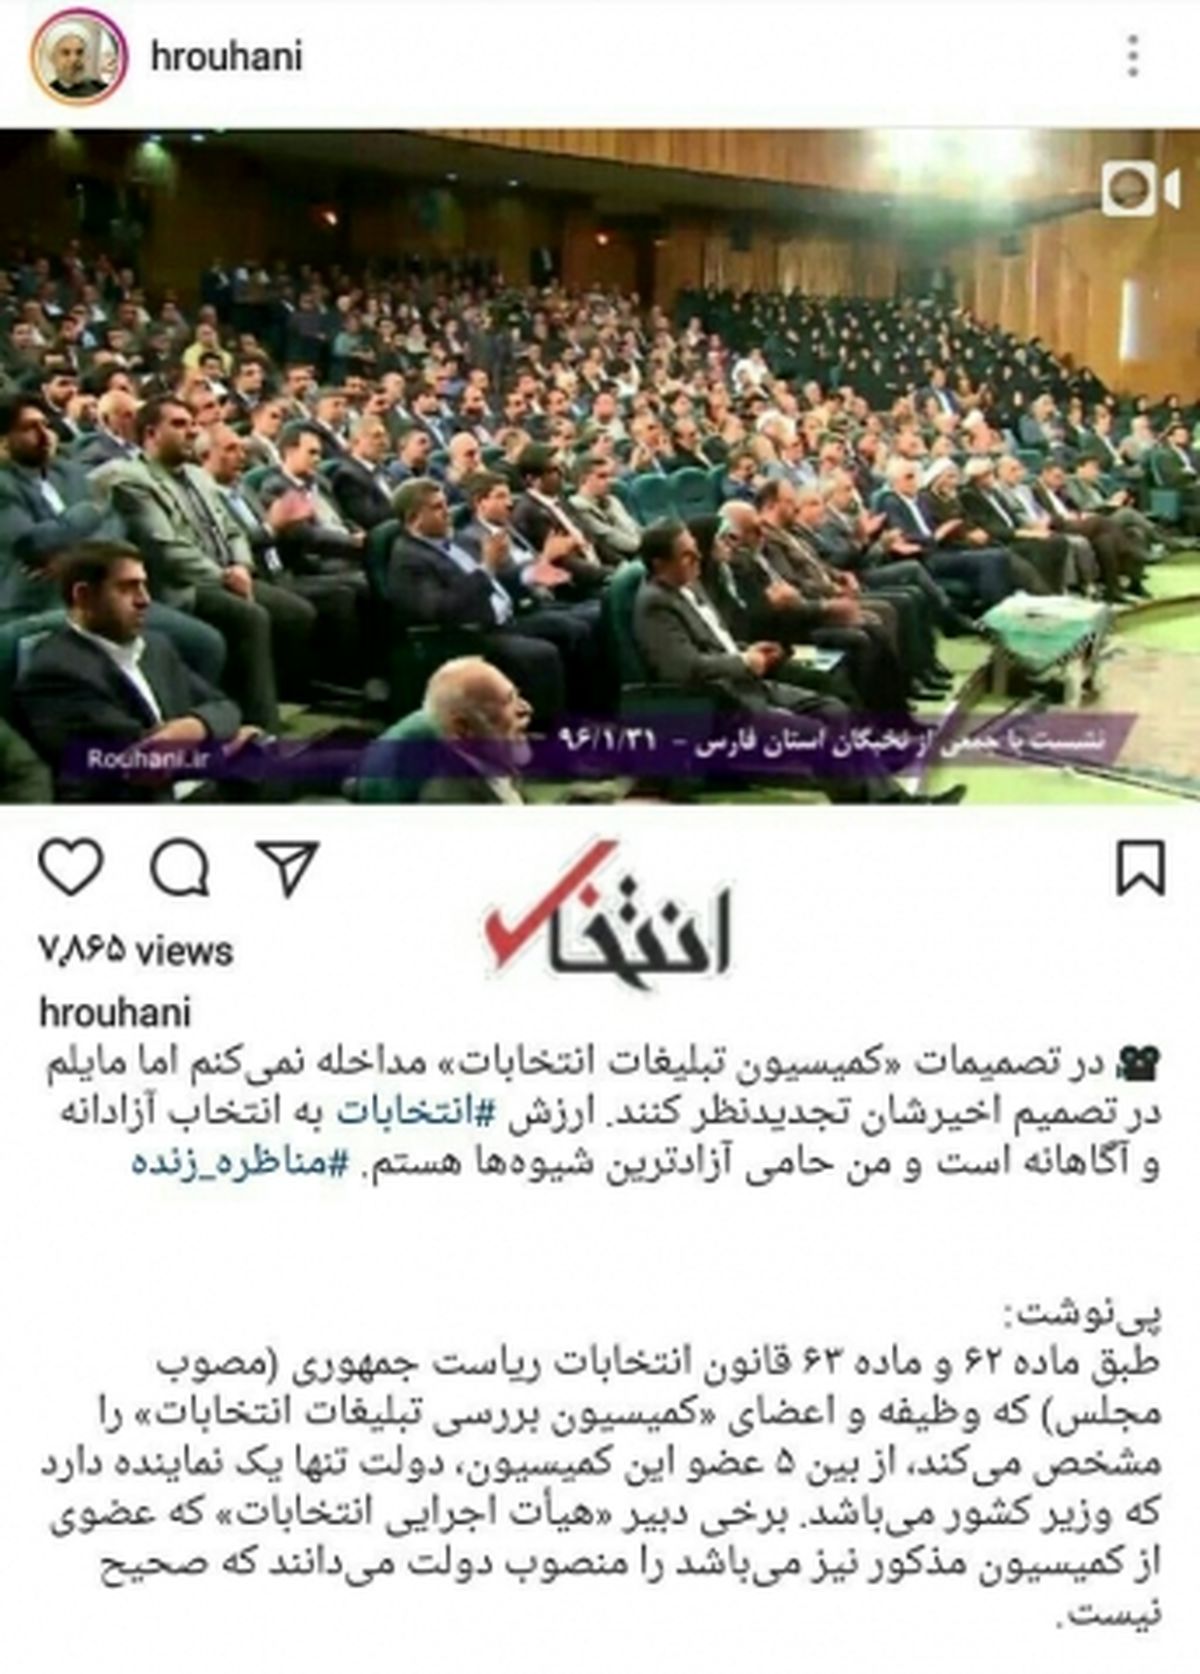 پست اینستاگرام حسن روحانی در مورد پخش زنده مناظرات